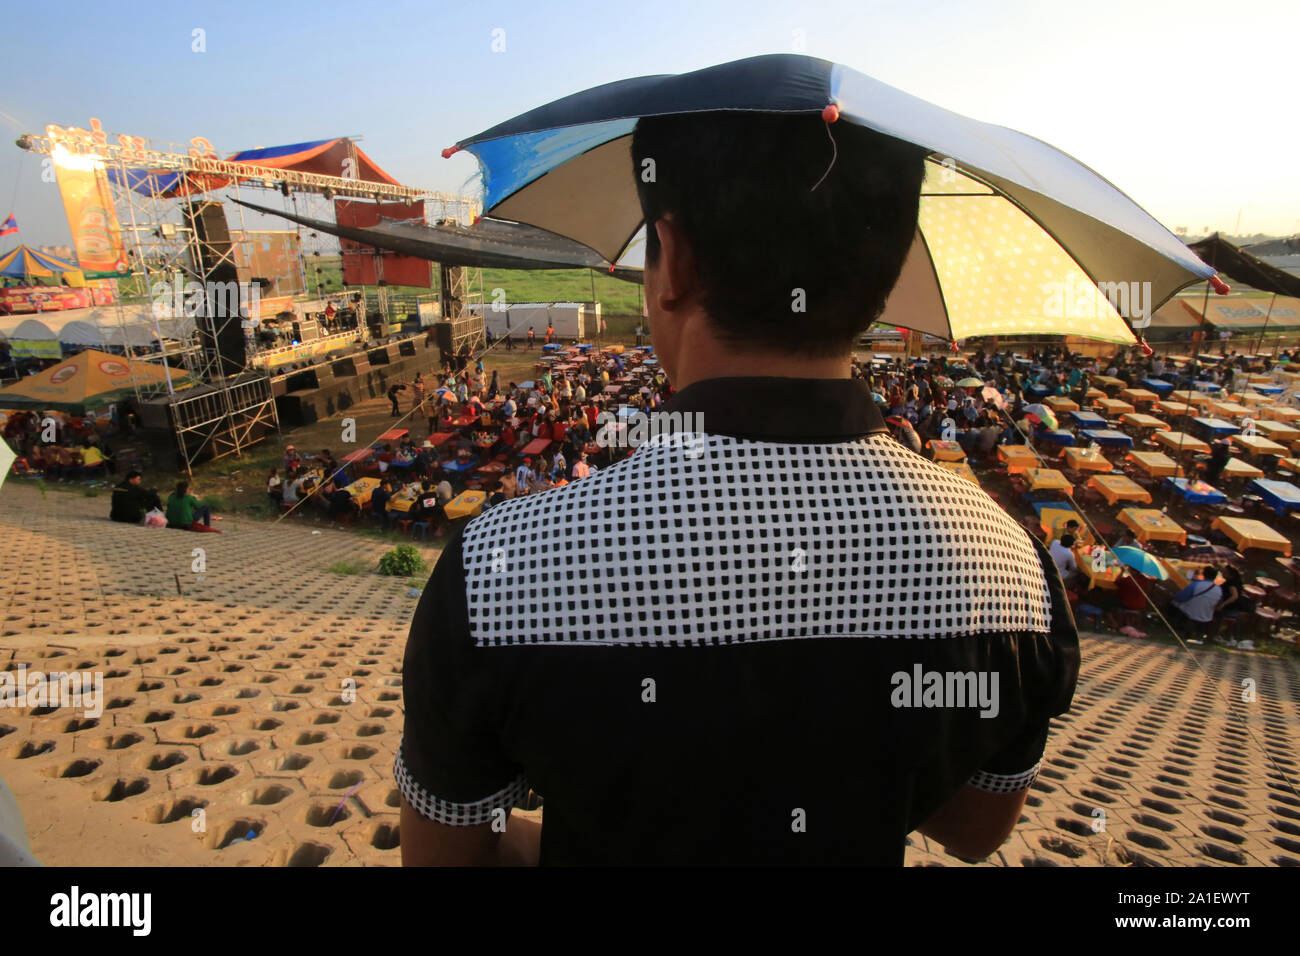 La Fête foraine. Vientiane. Laos. Foto Stock